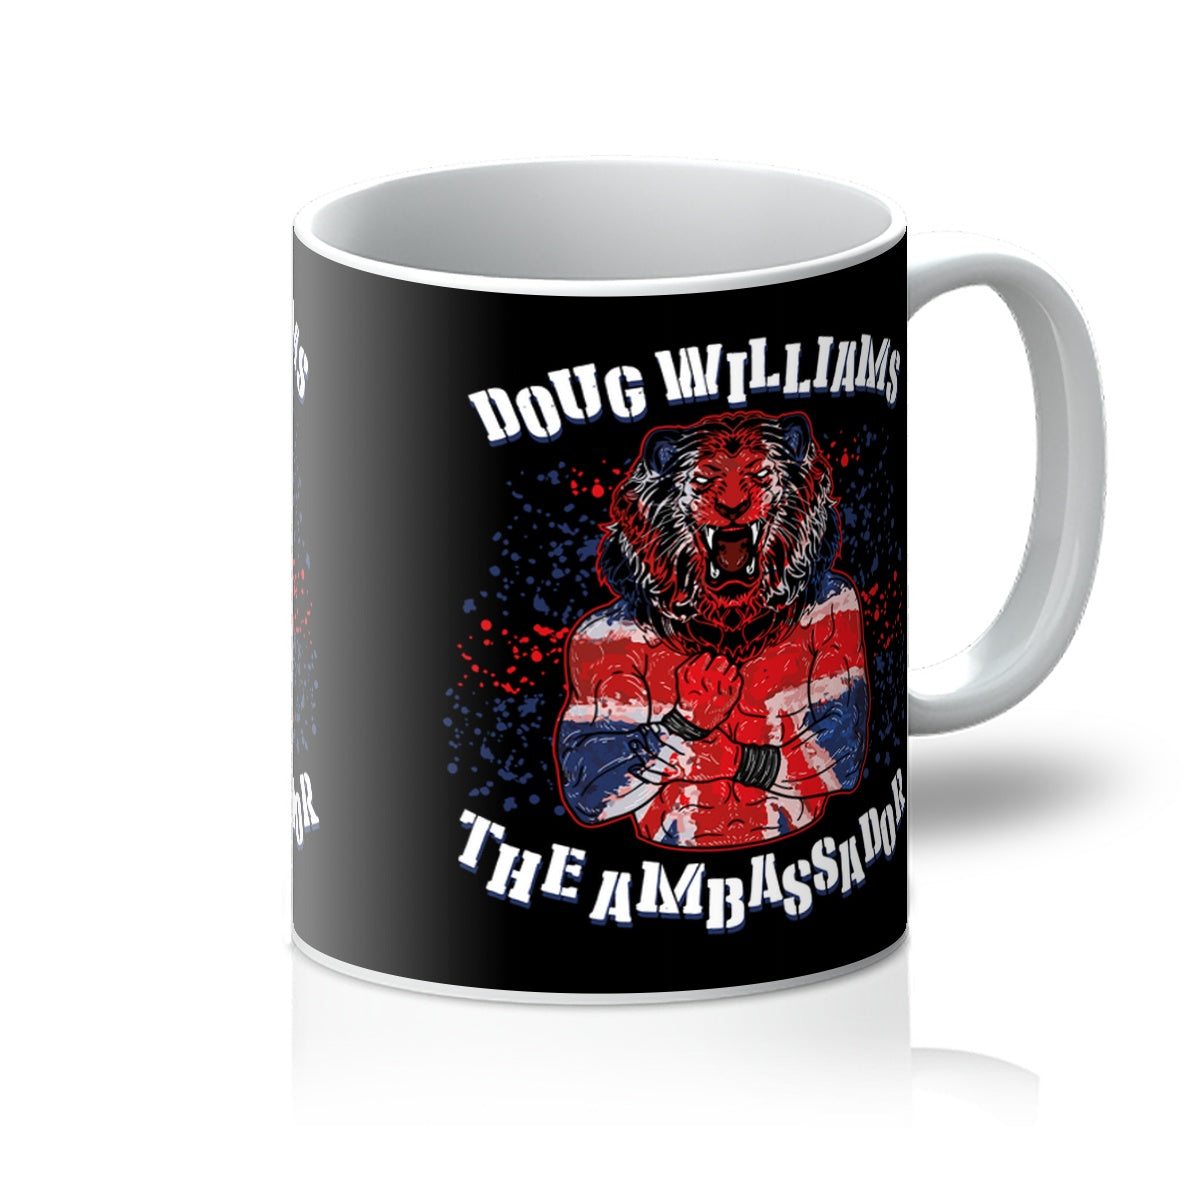 Doug Williams The Ambassador  Mug